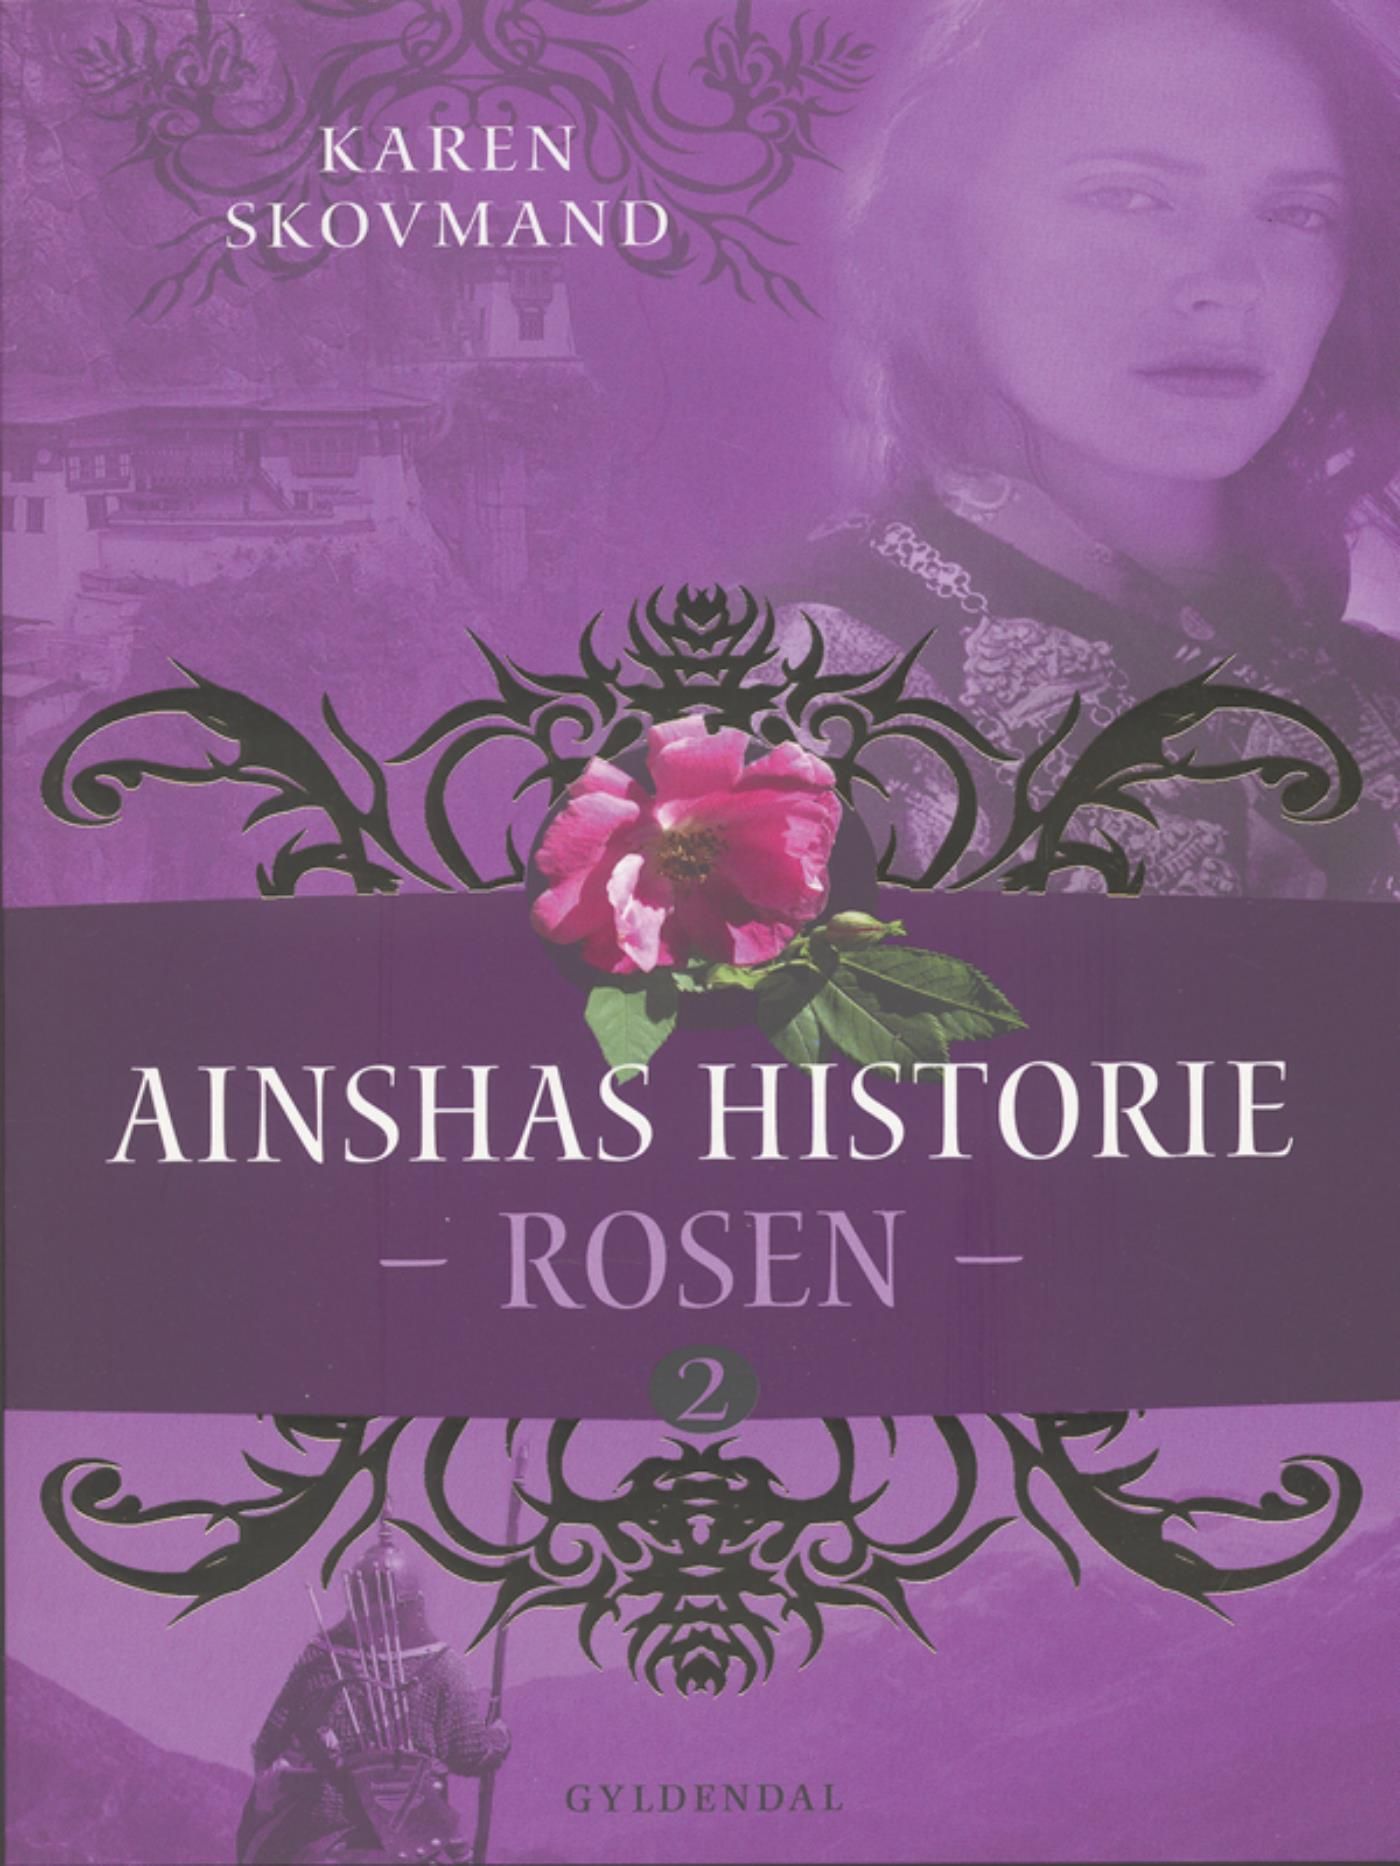 Ainshas historie 2 - Rosen, e-bok av Karen Skovmand Jensen